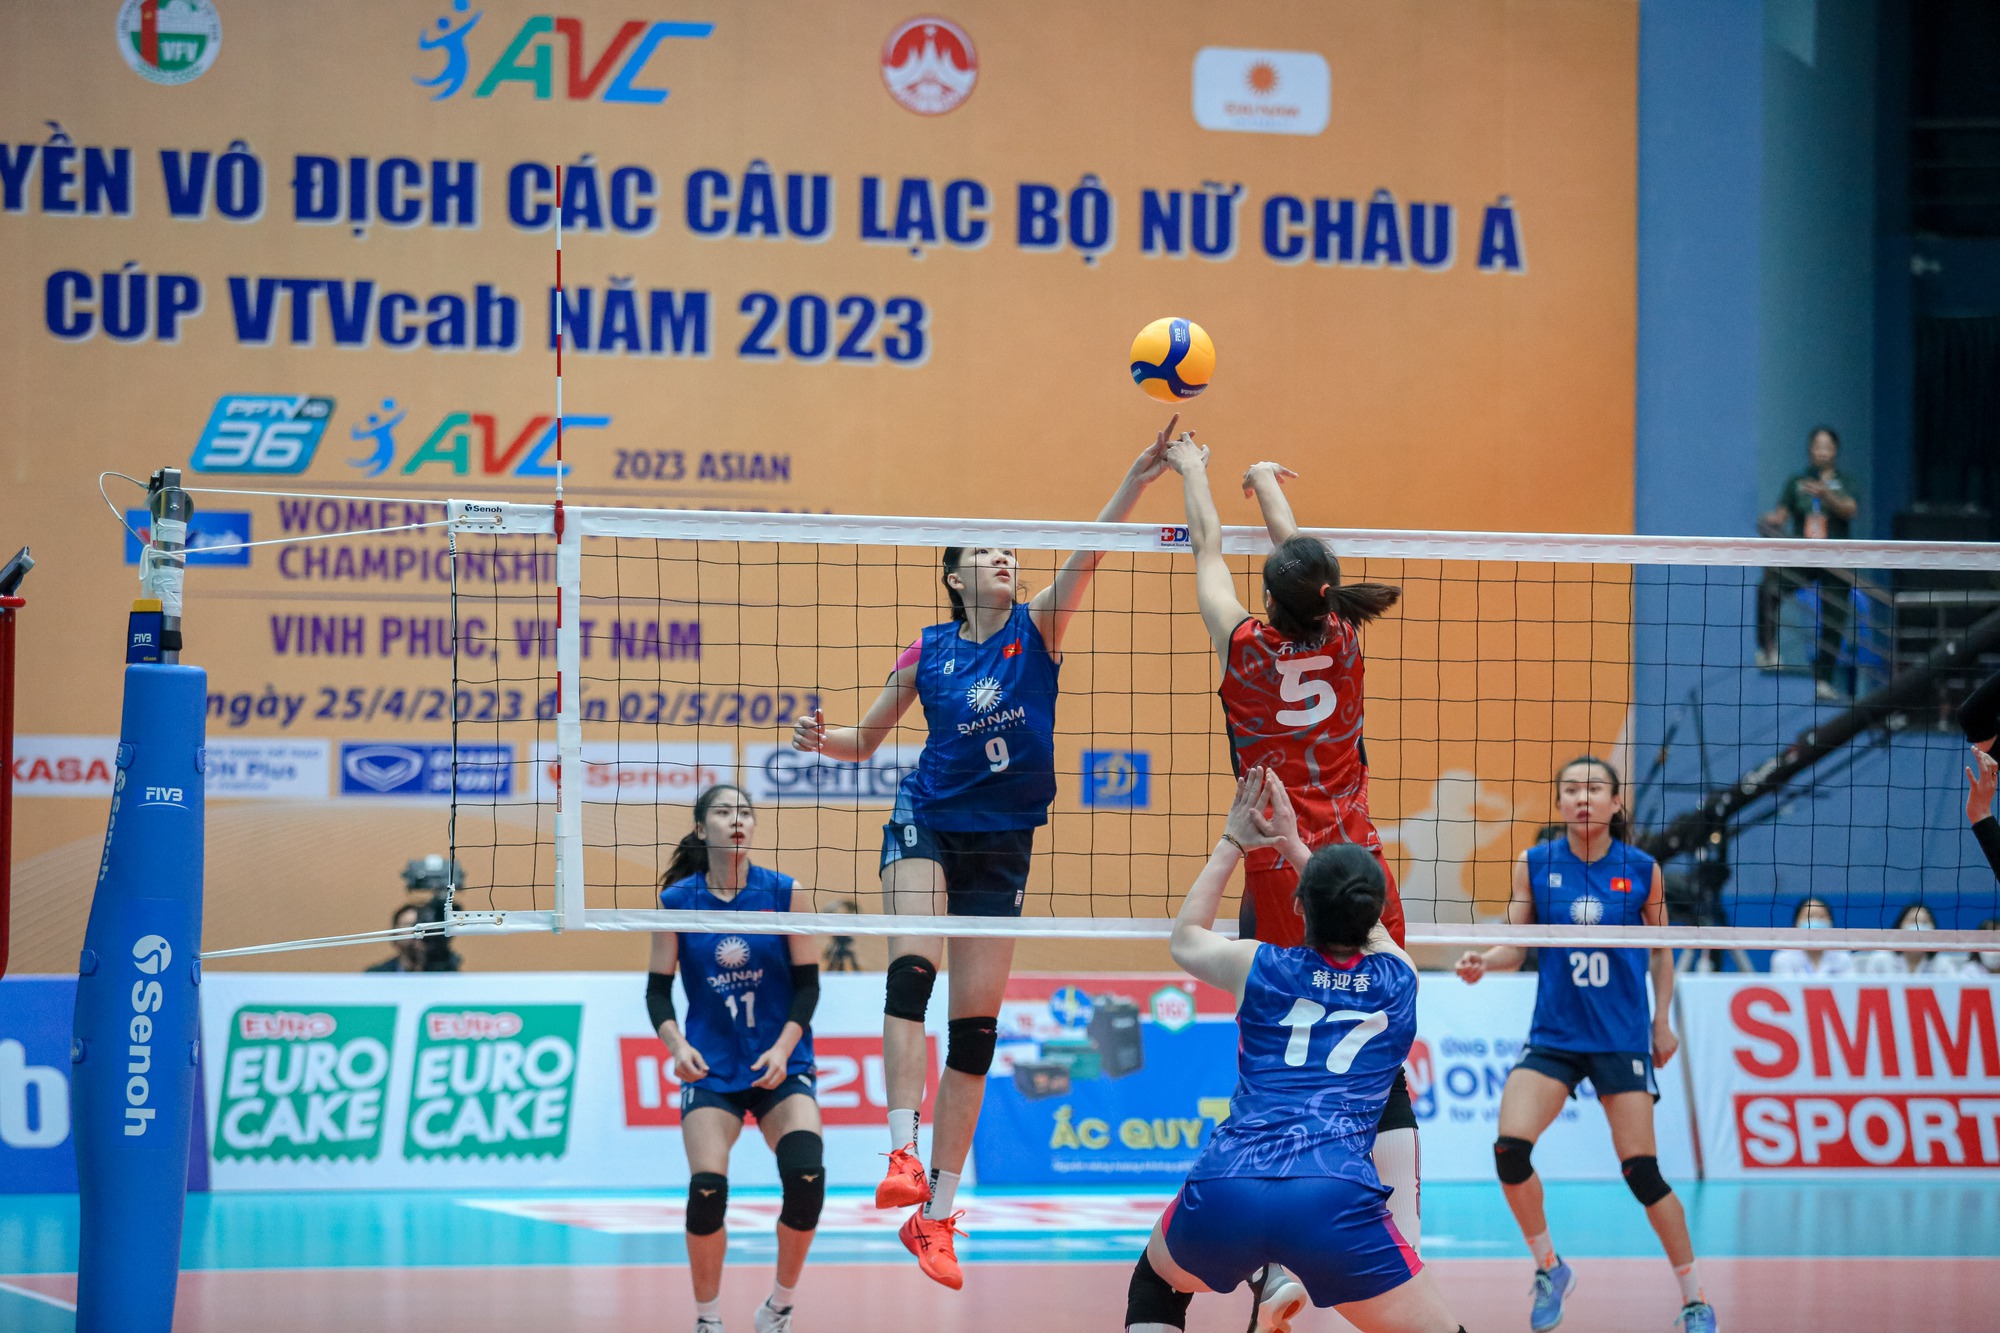 Địa chấn bóng chuyền AVC Cup, tuyển nữ Việt Nam lần đầu vào chung kết - Ảnh 2.